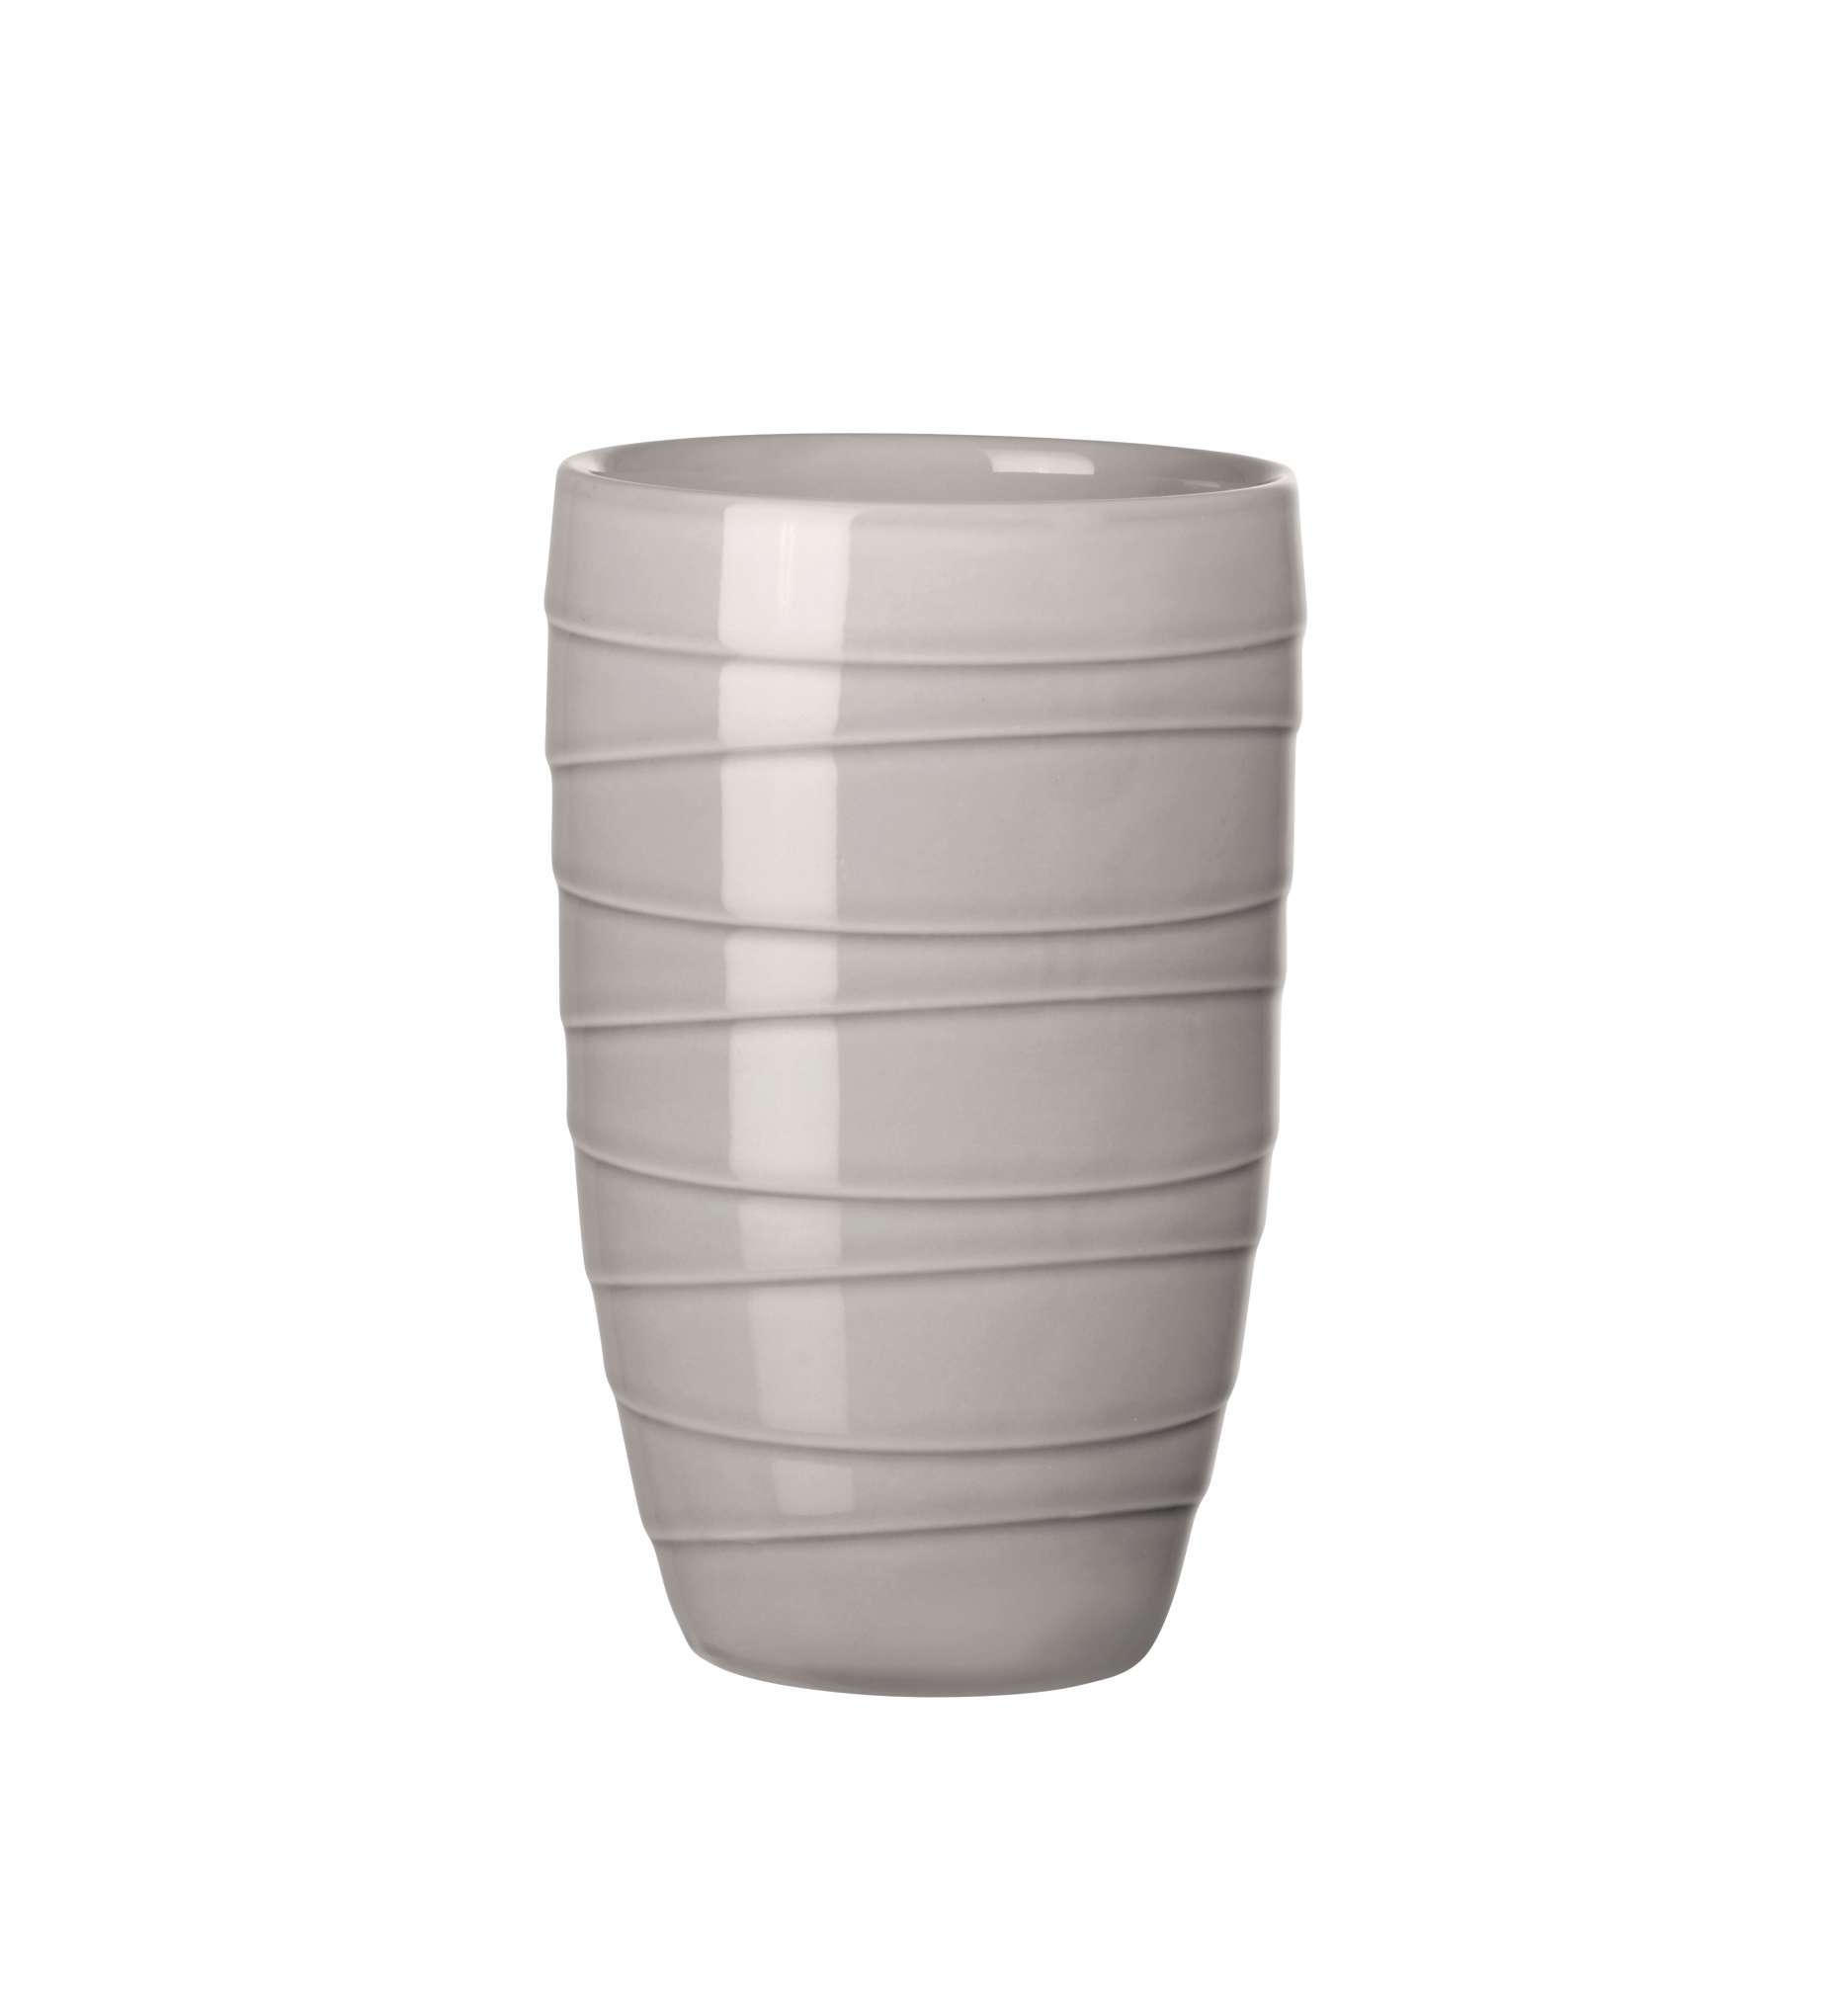 ŠÁLKA porcelán  - sivá, Basics, keramika (8,7/12,3cm) - ASA